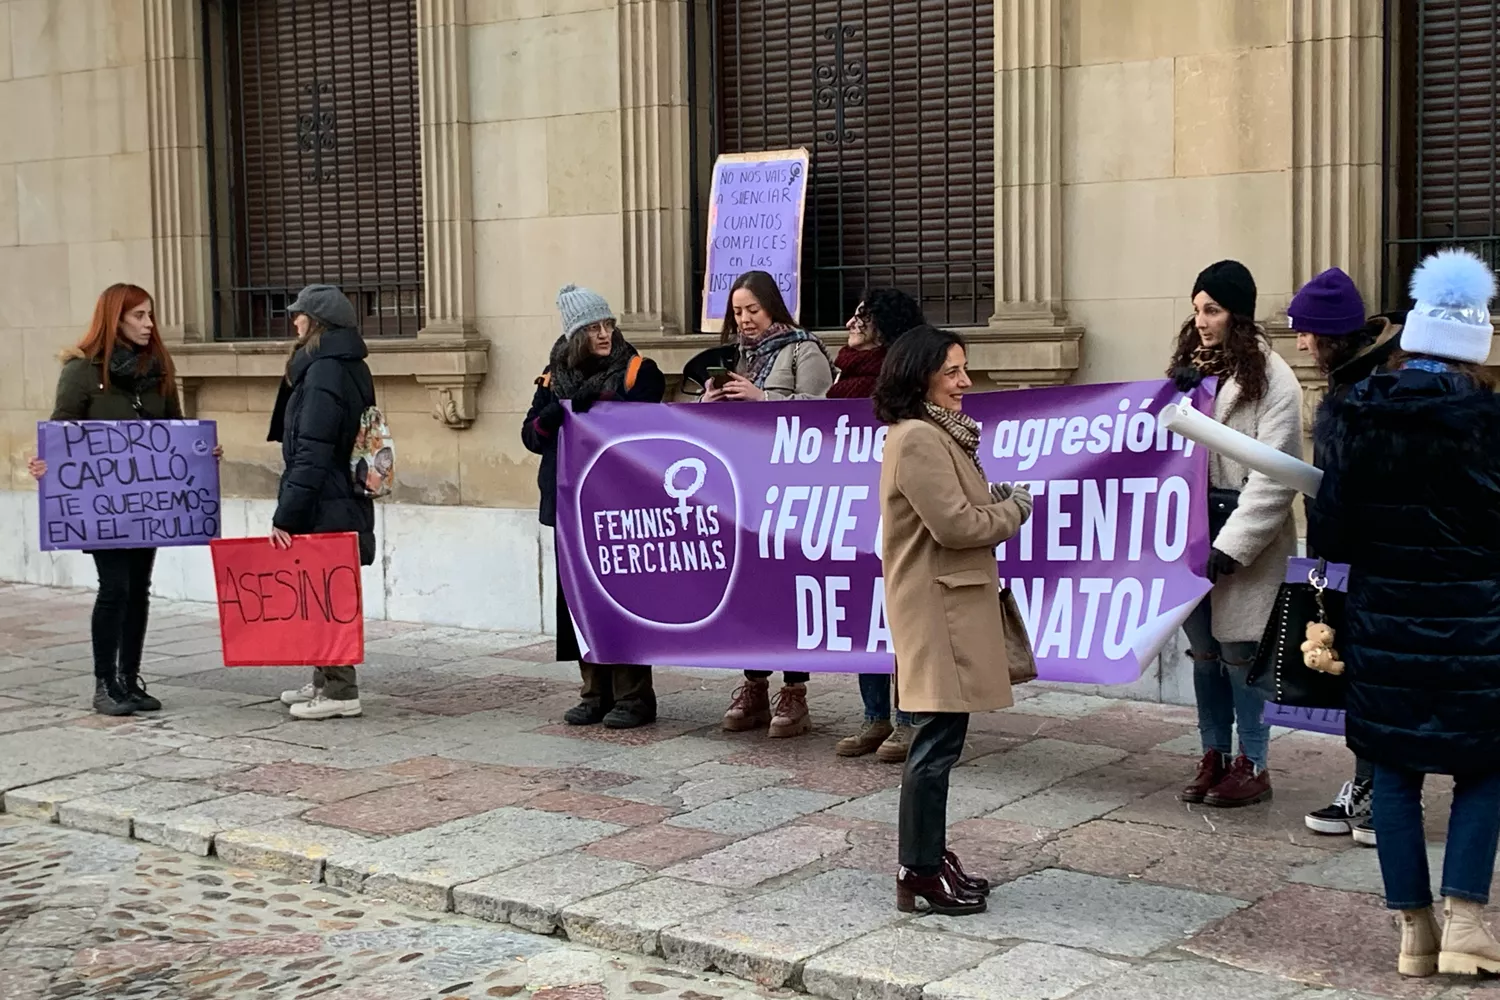 Feministas Bercianas esperando a Pedro Muñoz